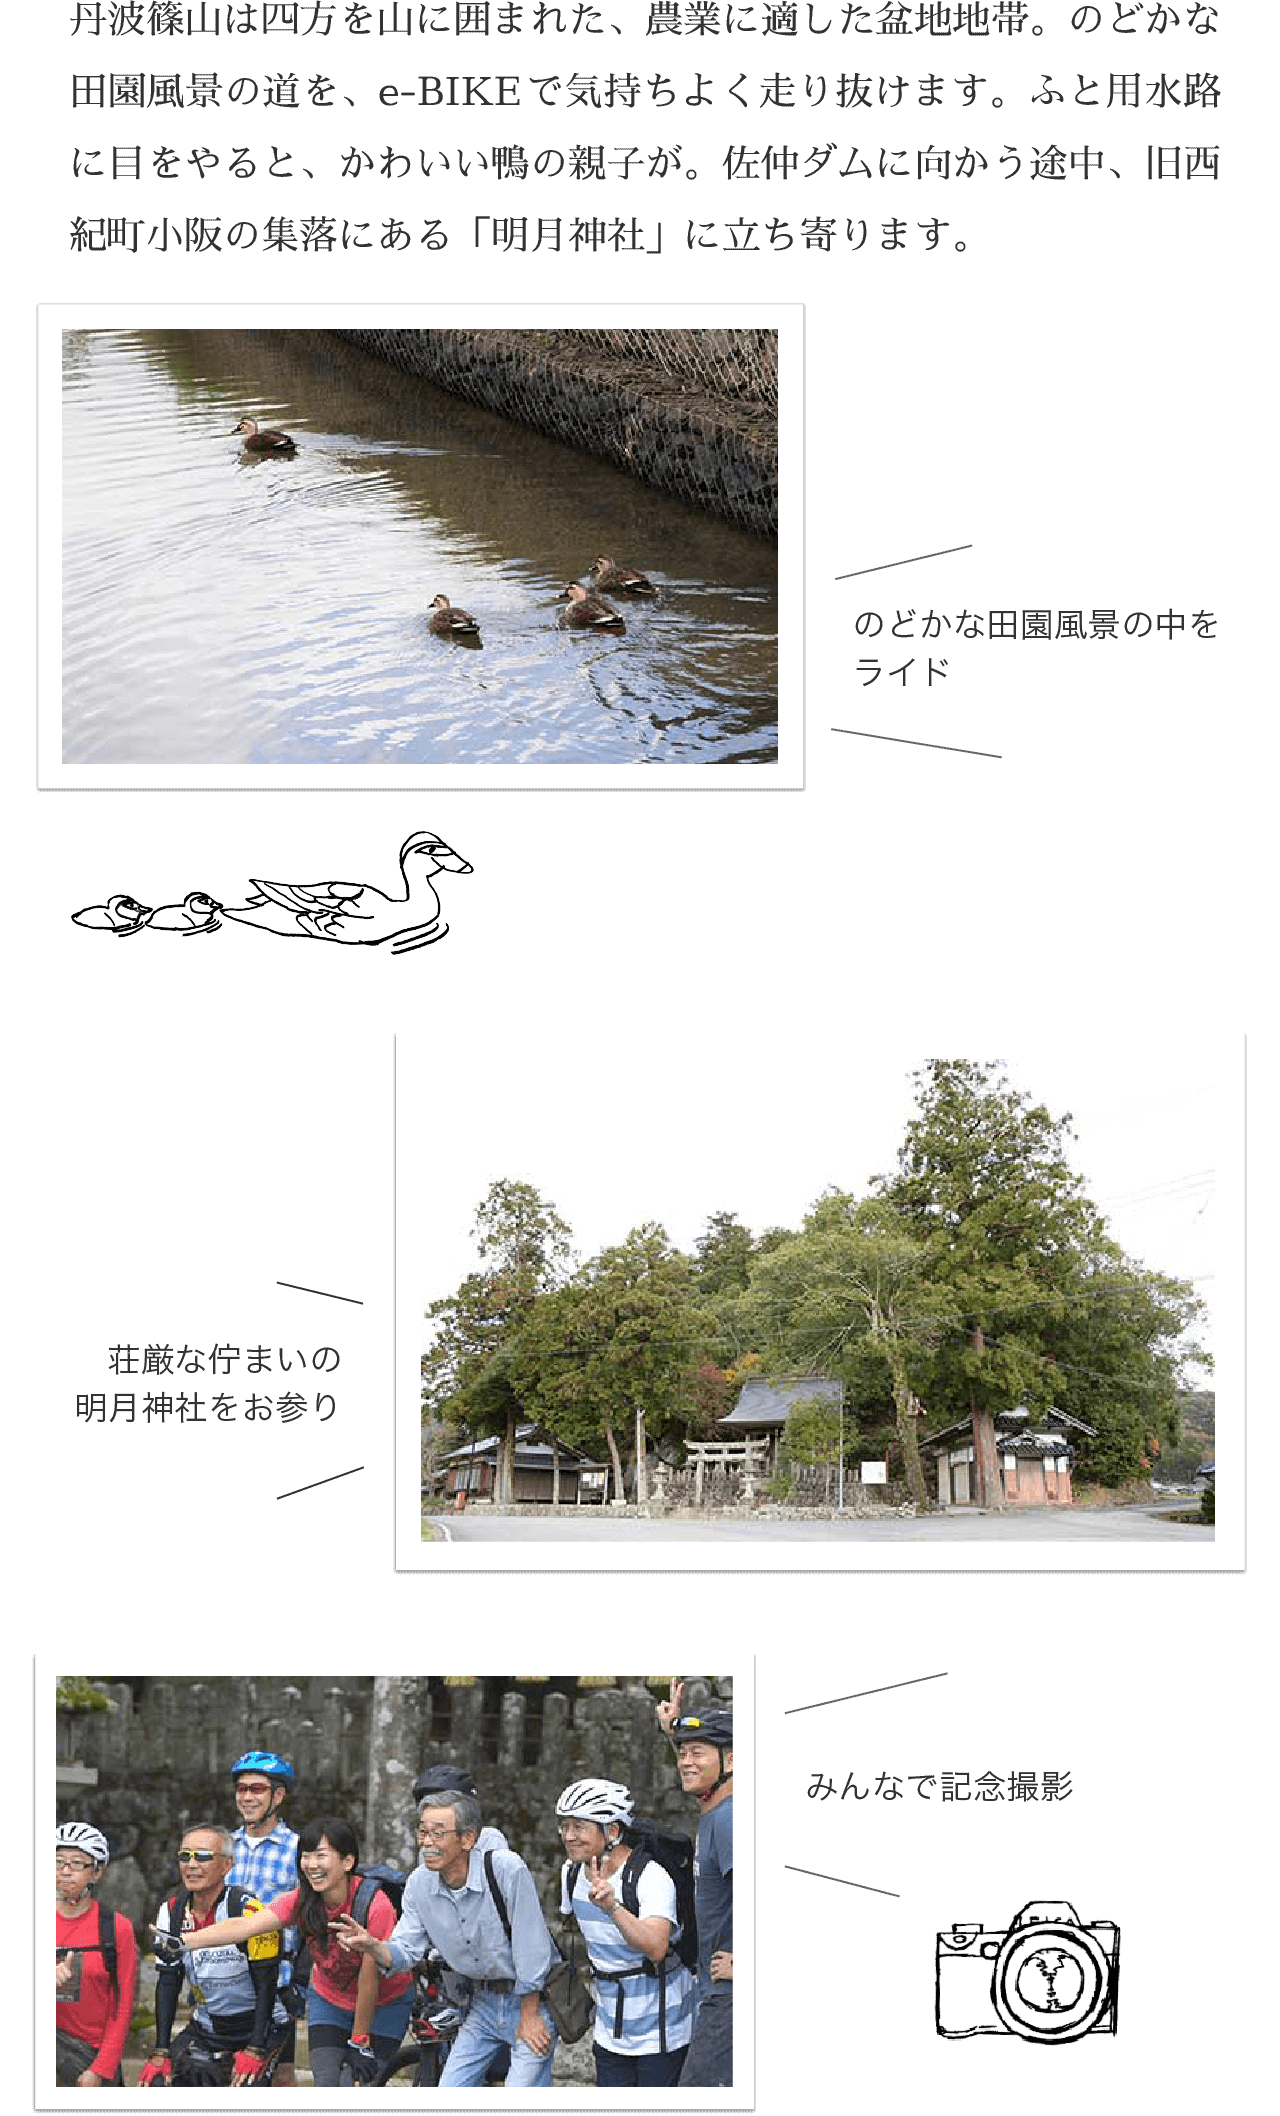 丹波篠山は四方を山に囲まれた、農業に適した盆地地帯。のどかな田園風景の道を、e-BIKEで気持ちよく走り抜けます。ふと用水路に目をやると、かわいい鴨の親子が。佐仲ダムに向かう途中、旧西紀町小阪の集落にある「明月神社」に立ち寄ります。